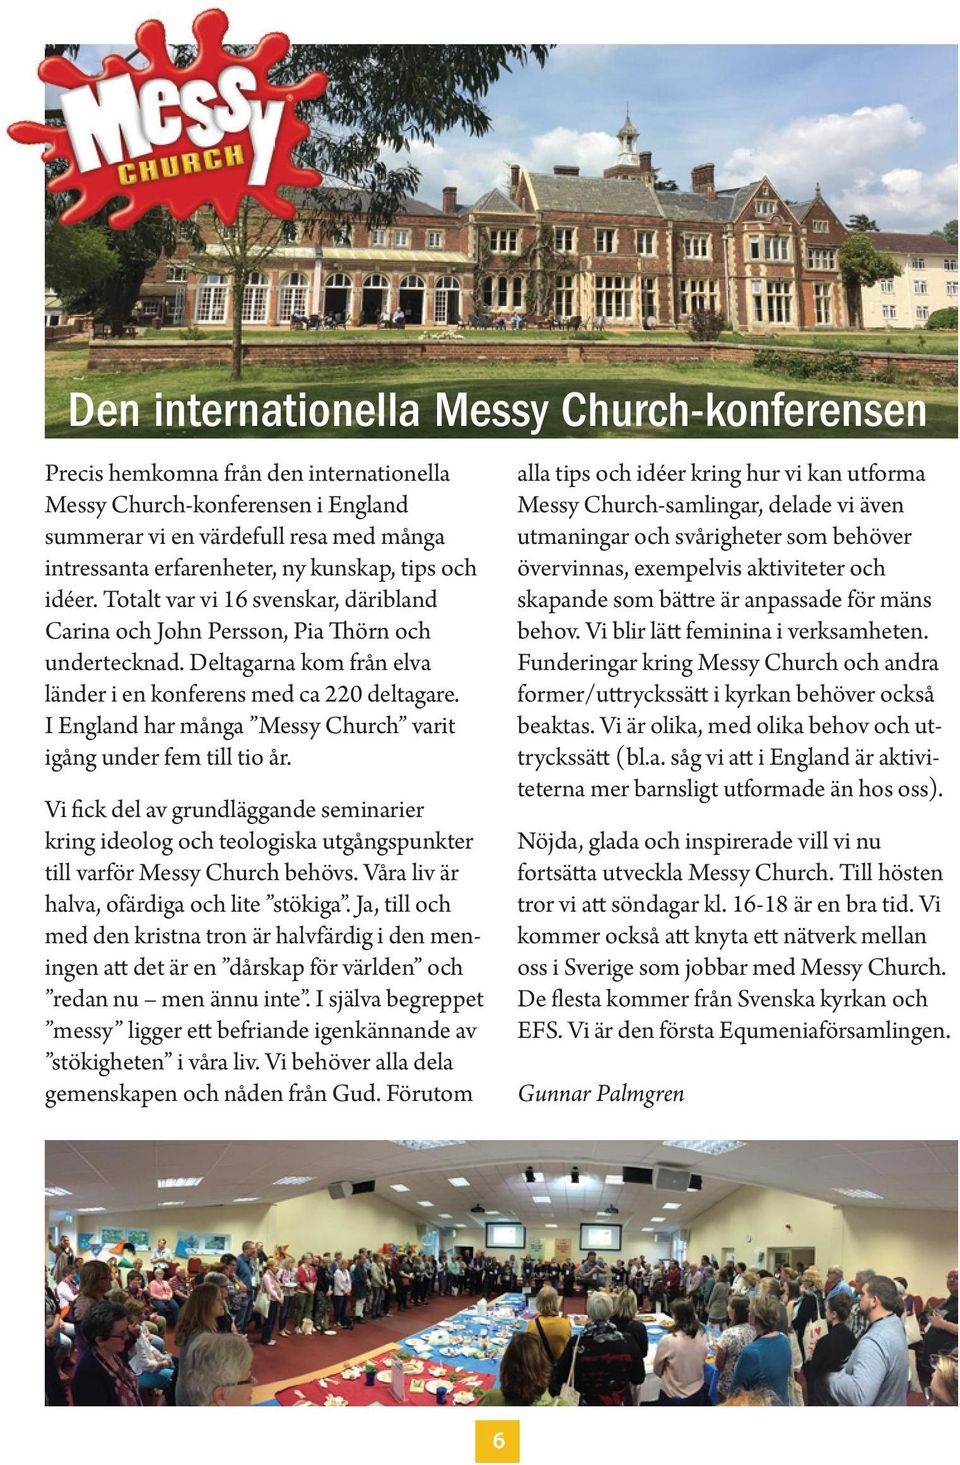 I England har många Messy Church varit igång under fem till tio år. Vi fick del av grundläggande seminarier kring ideolog och teologiska utgångspunkter till varför Messy Church behövs.